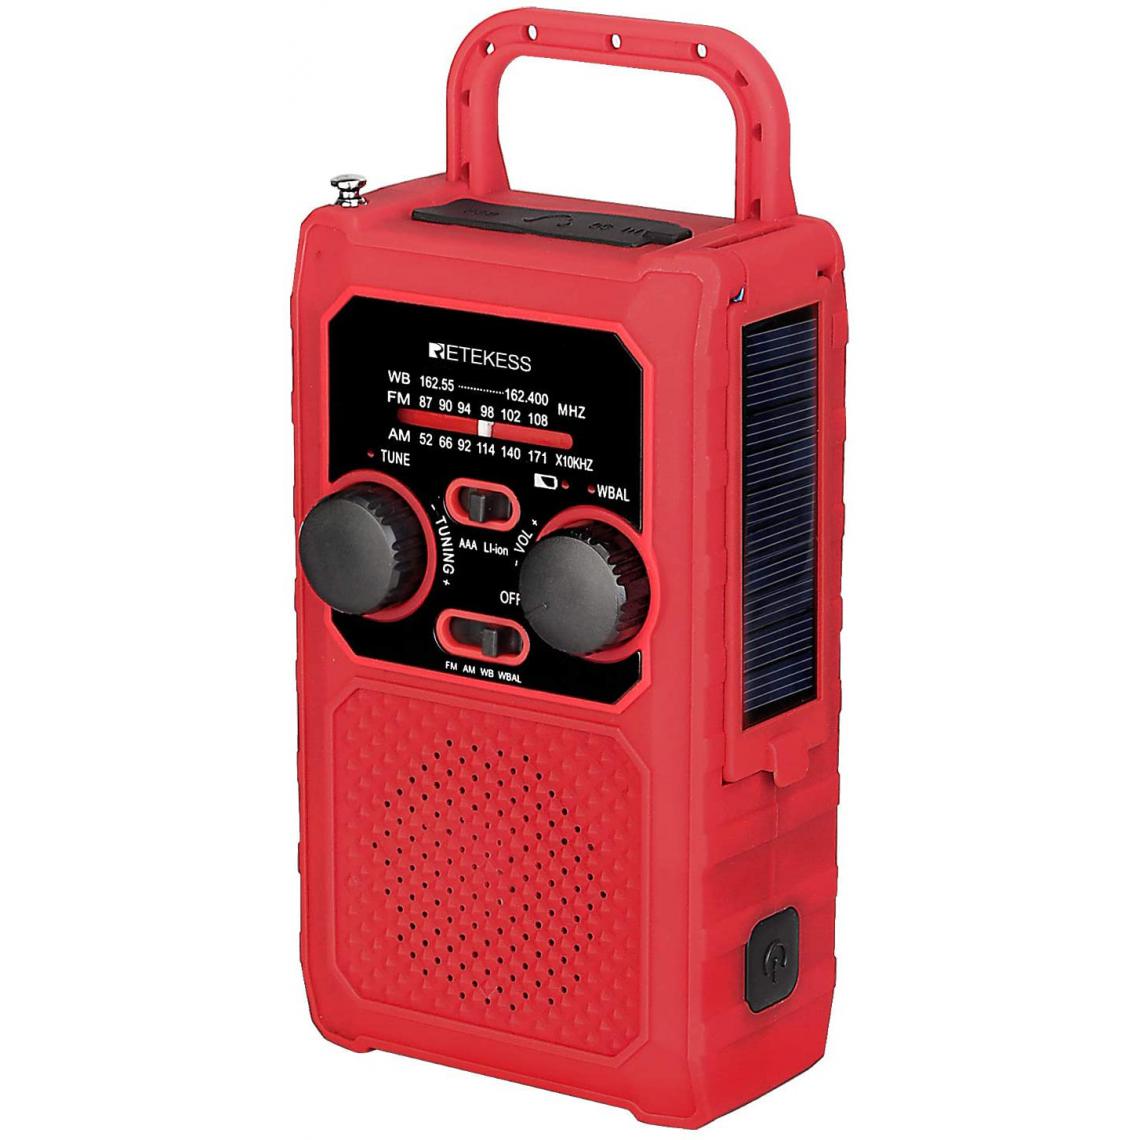 Retekess - radio portable AM FM avec batterie Li-on rechargeable Intégrée de 5000 mAh et LED Torche pour Camping rouge noir - Radio